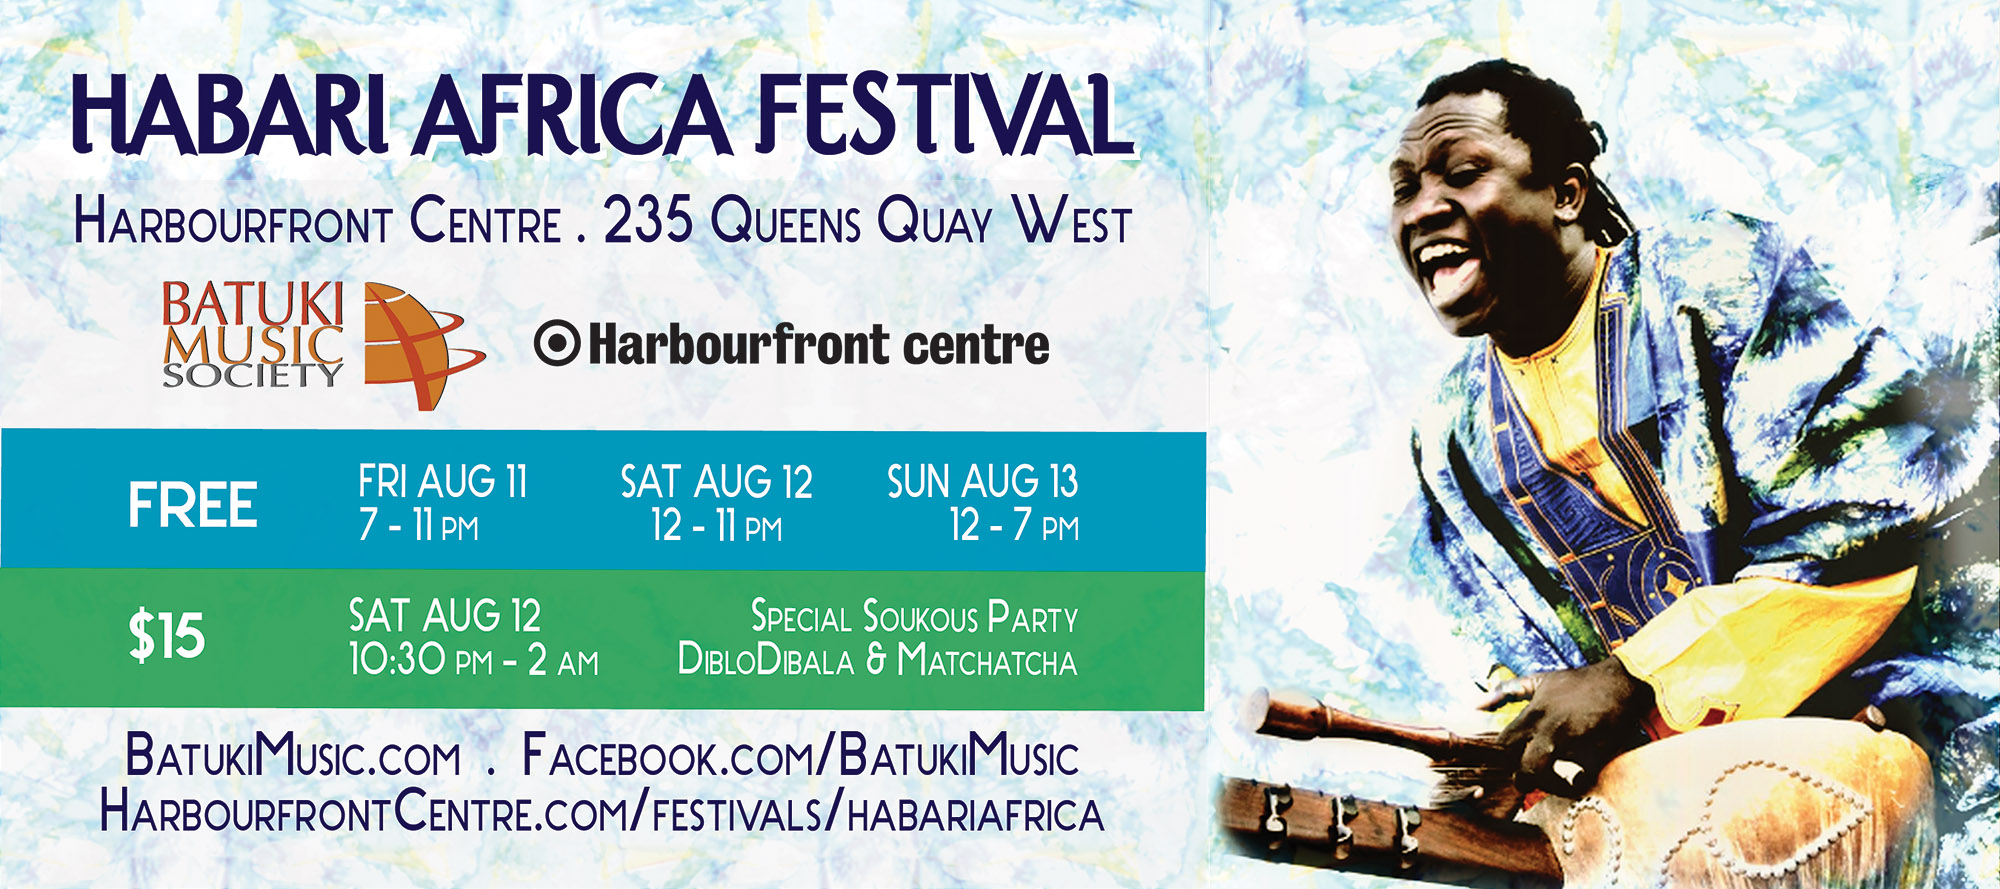 Habari Africa Festival: Aug 11 – 13, 2017